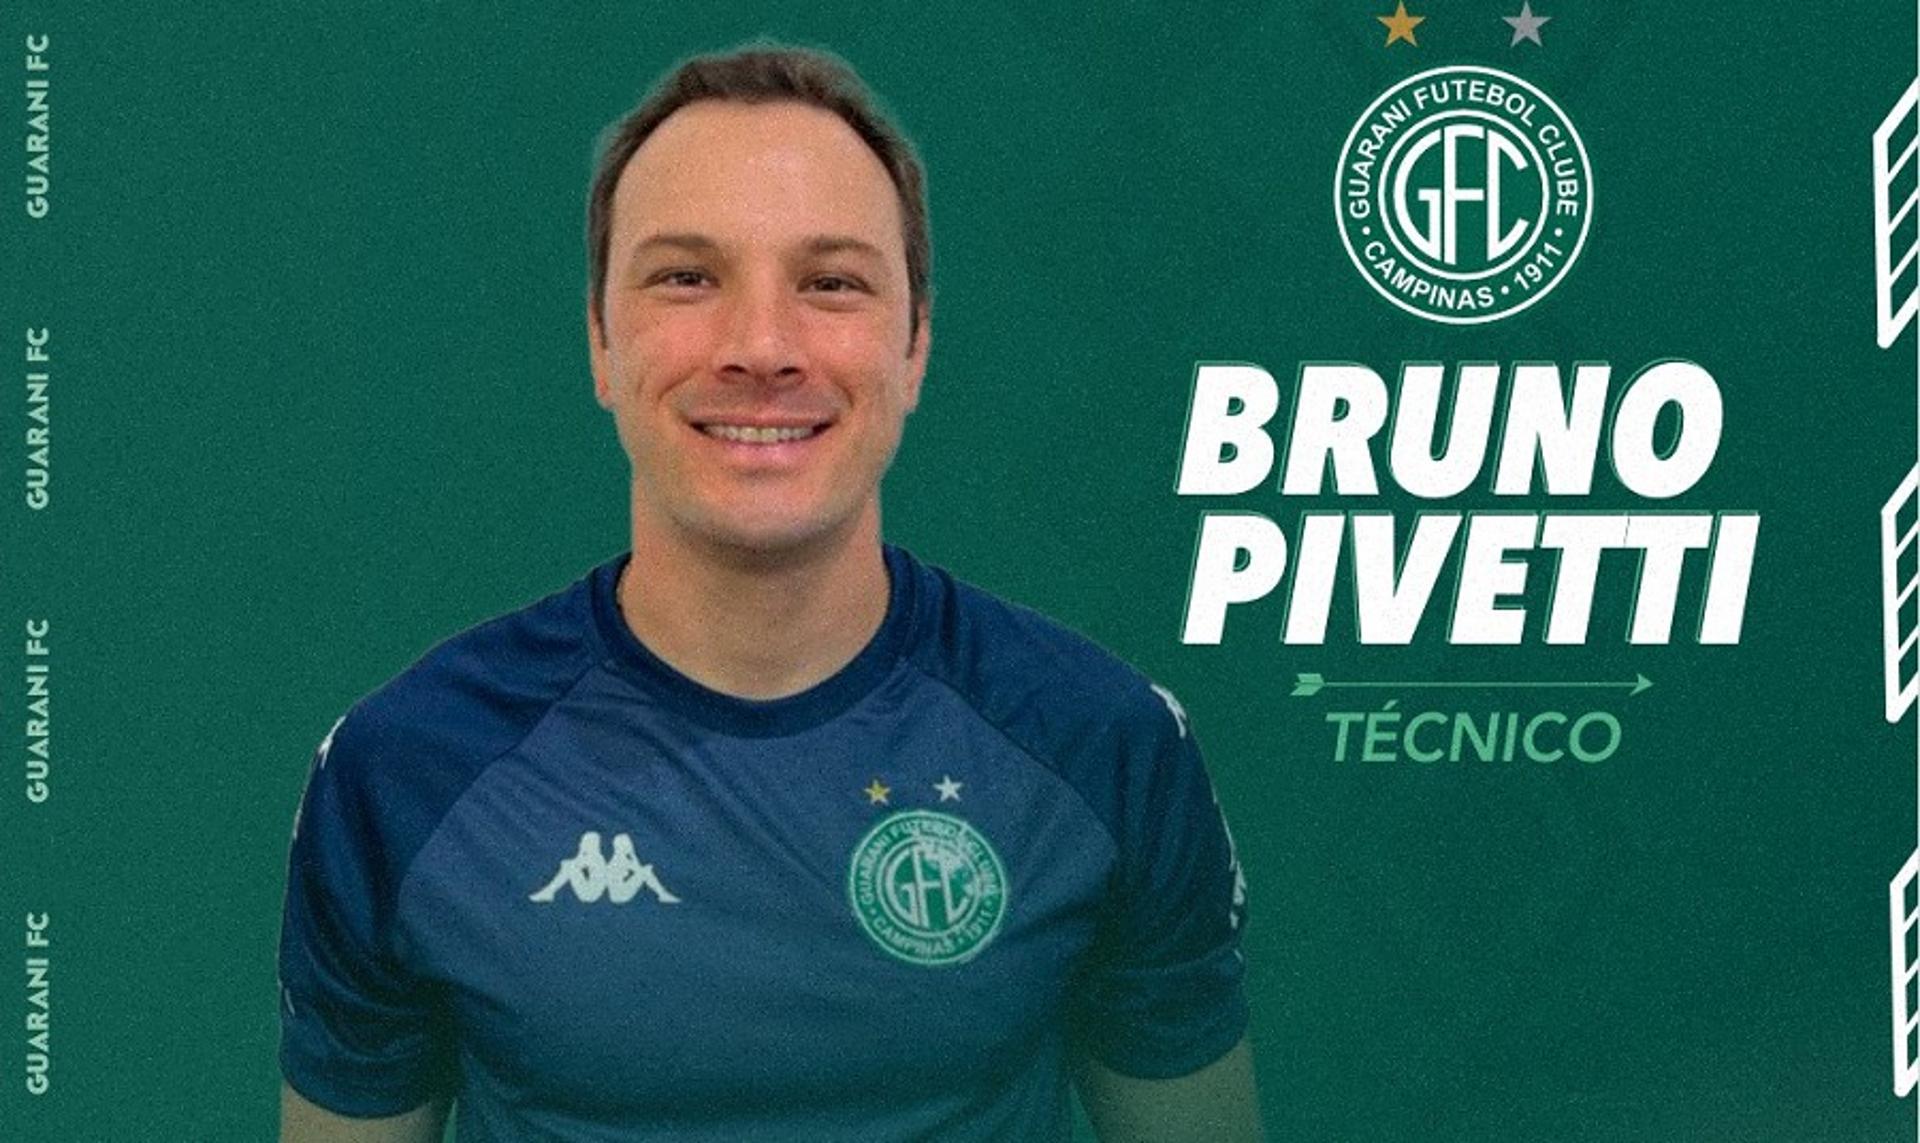 Bruno Pivetti anunciado pelo Guarani